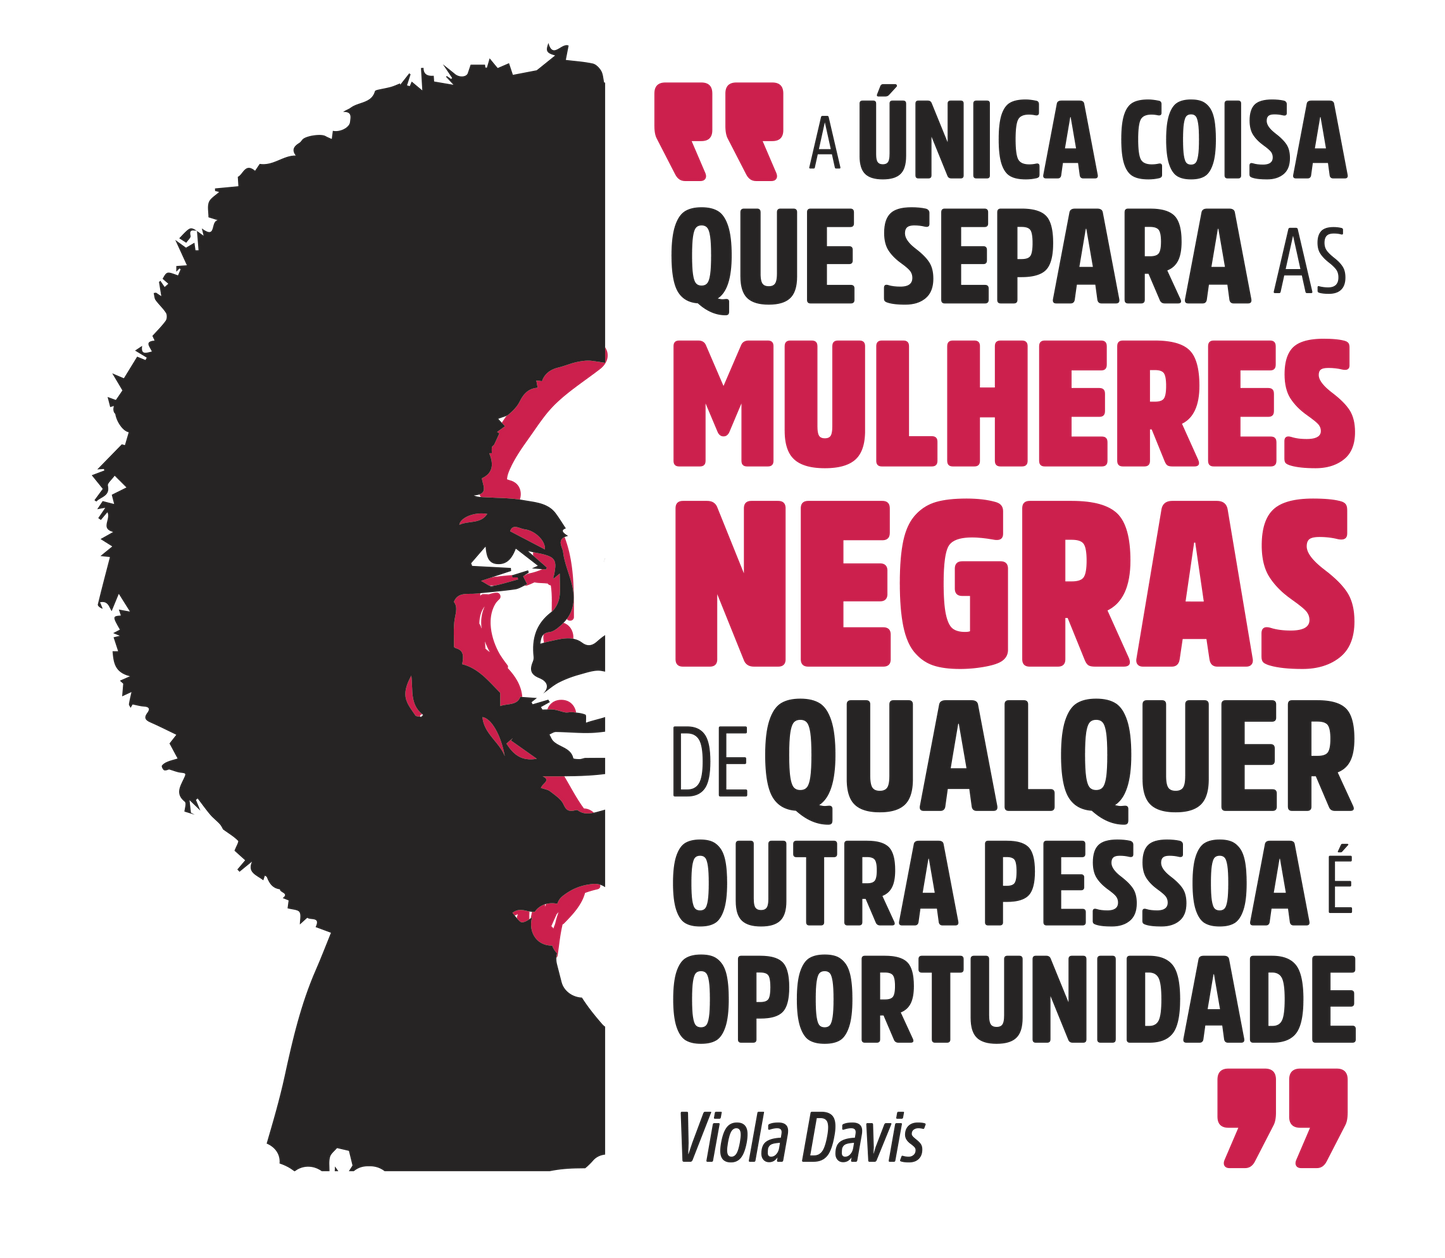 estampa com ilustração da Viola Davis e a frase "a única coisa que separa as mulheres negras de qualquer outra pessoa é oportunidade"